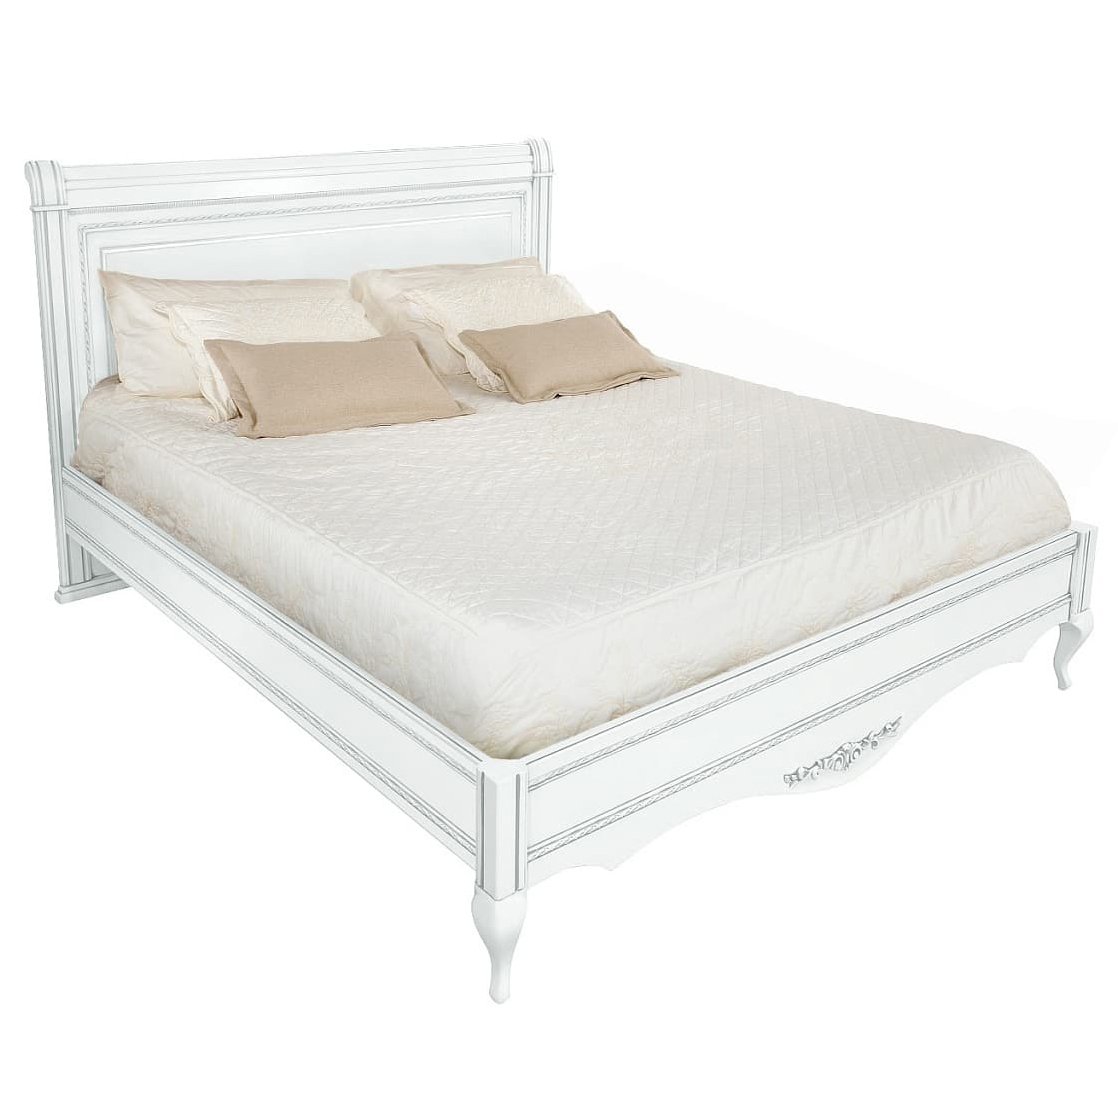 Кровать Timber Неаполь, двуспальная 160x200 см цвет: белый с серебром (T-536)T-536